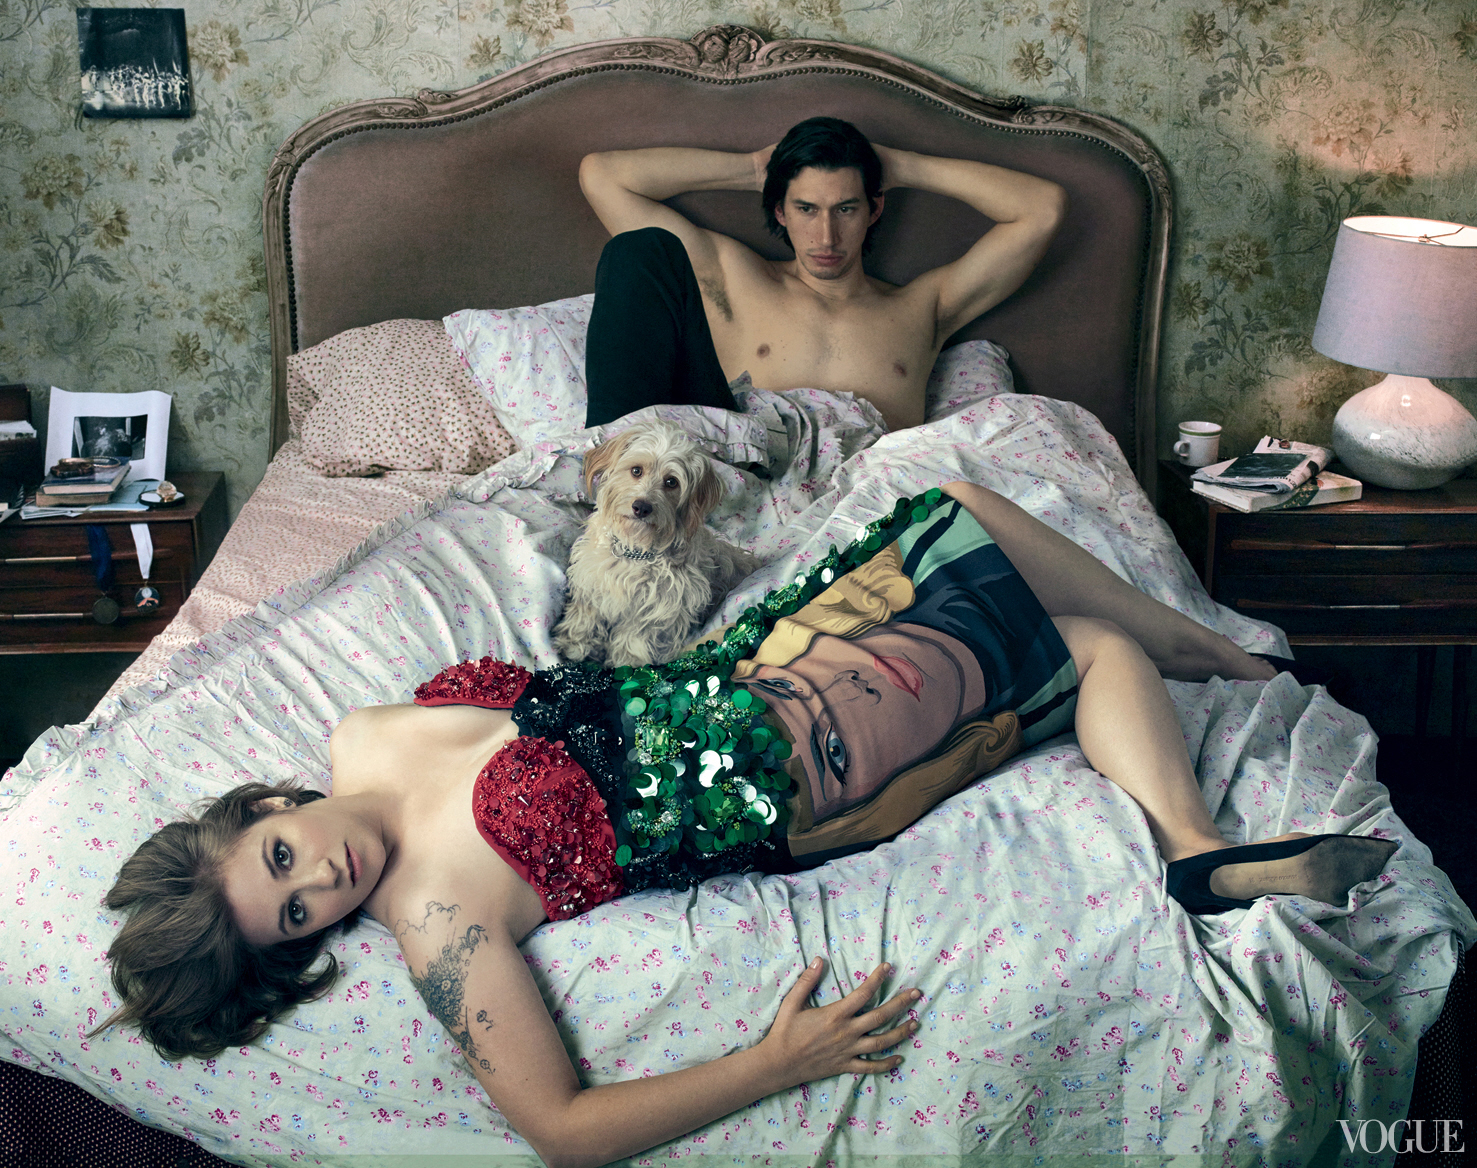 Лена Данхэм отвечает на спор по поводу ее ретушированных фотографий Vogue - голая правда